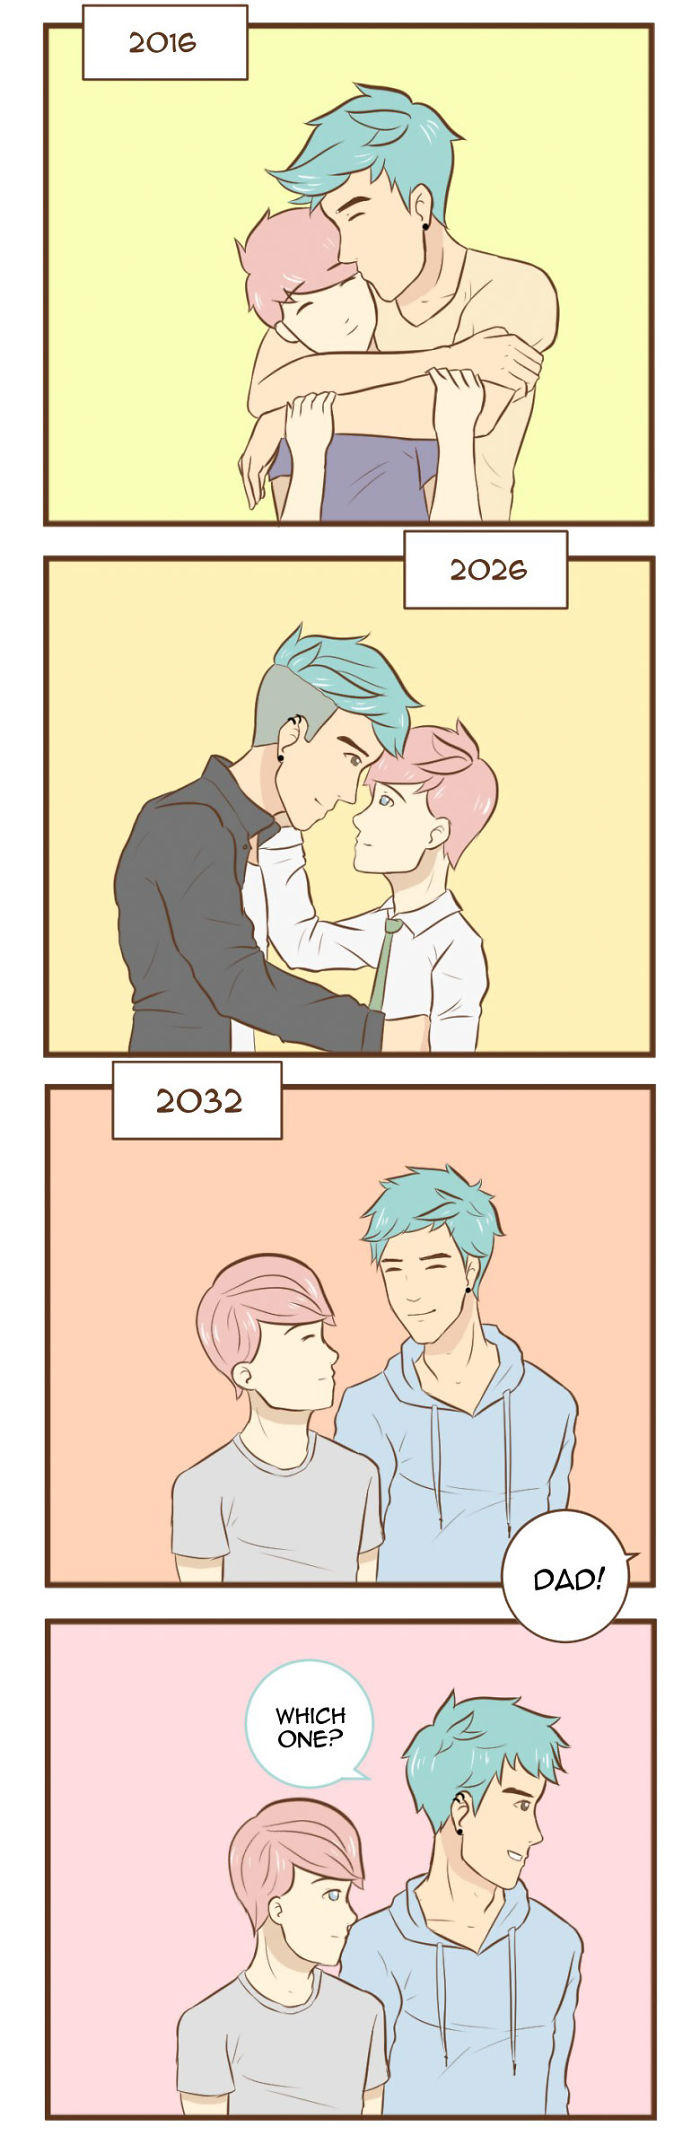 Gay-Couple-Comics-Small-World-Wonsun-Jin